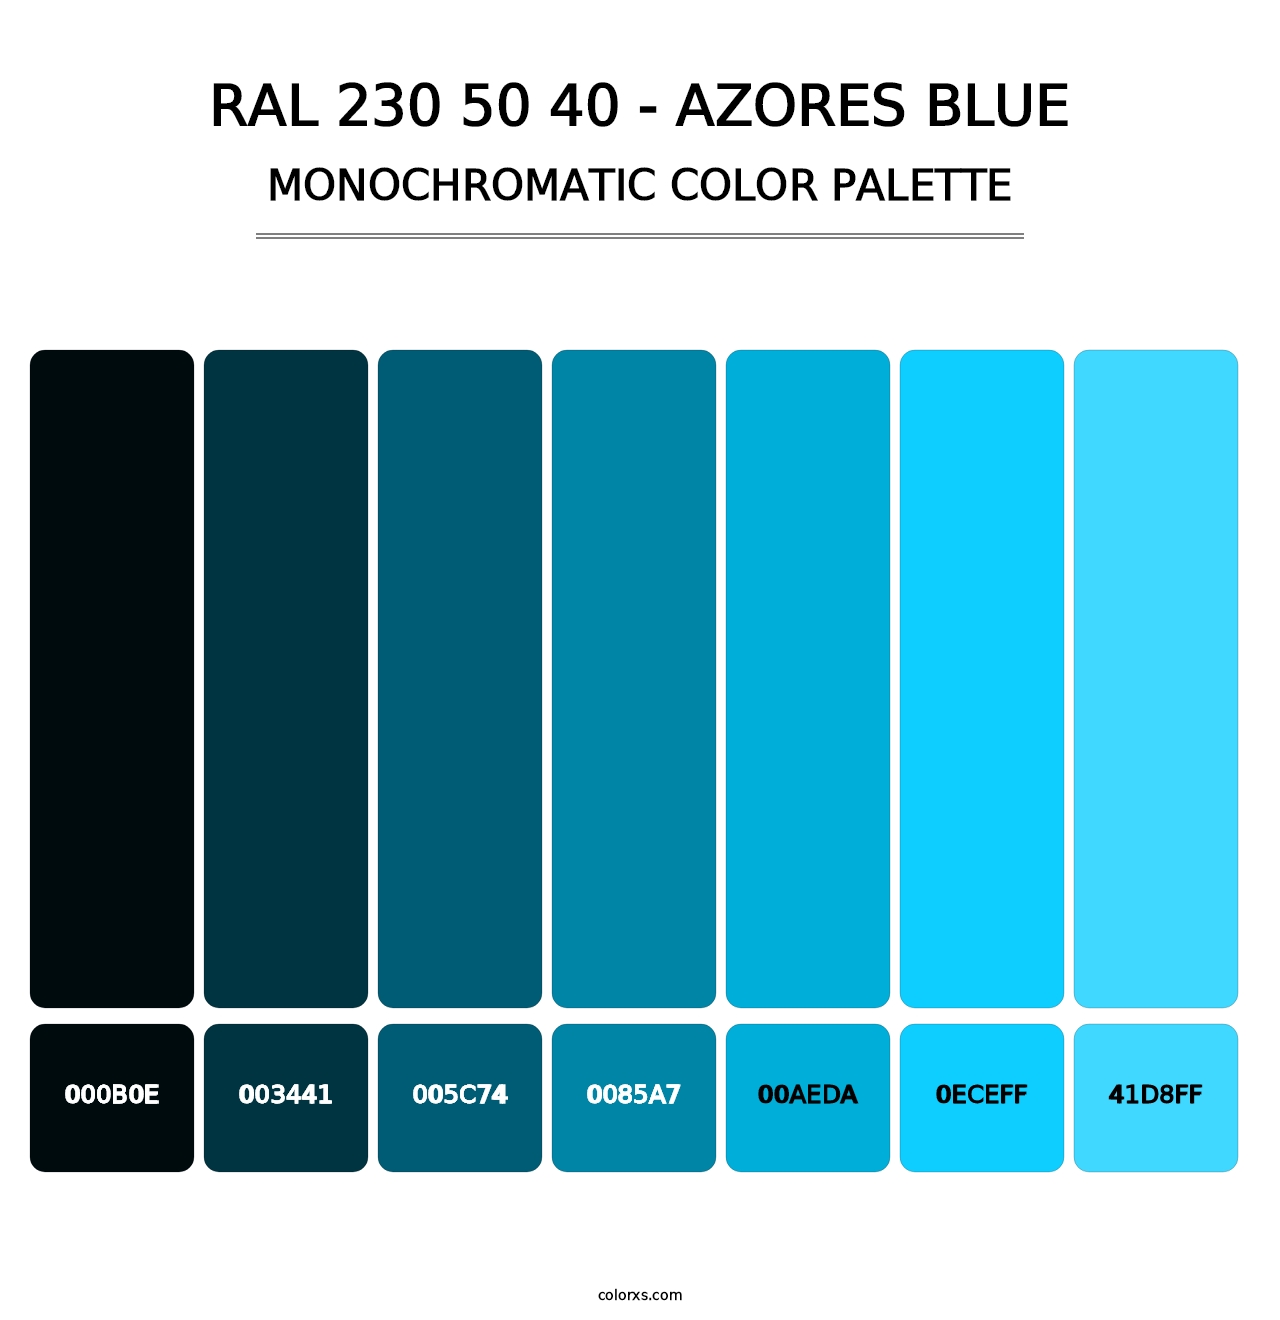 RAL 230 50 40 - Azores Blue - Monochromatic Color Palette